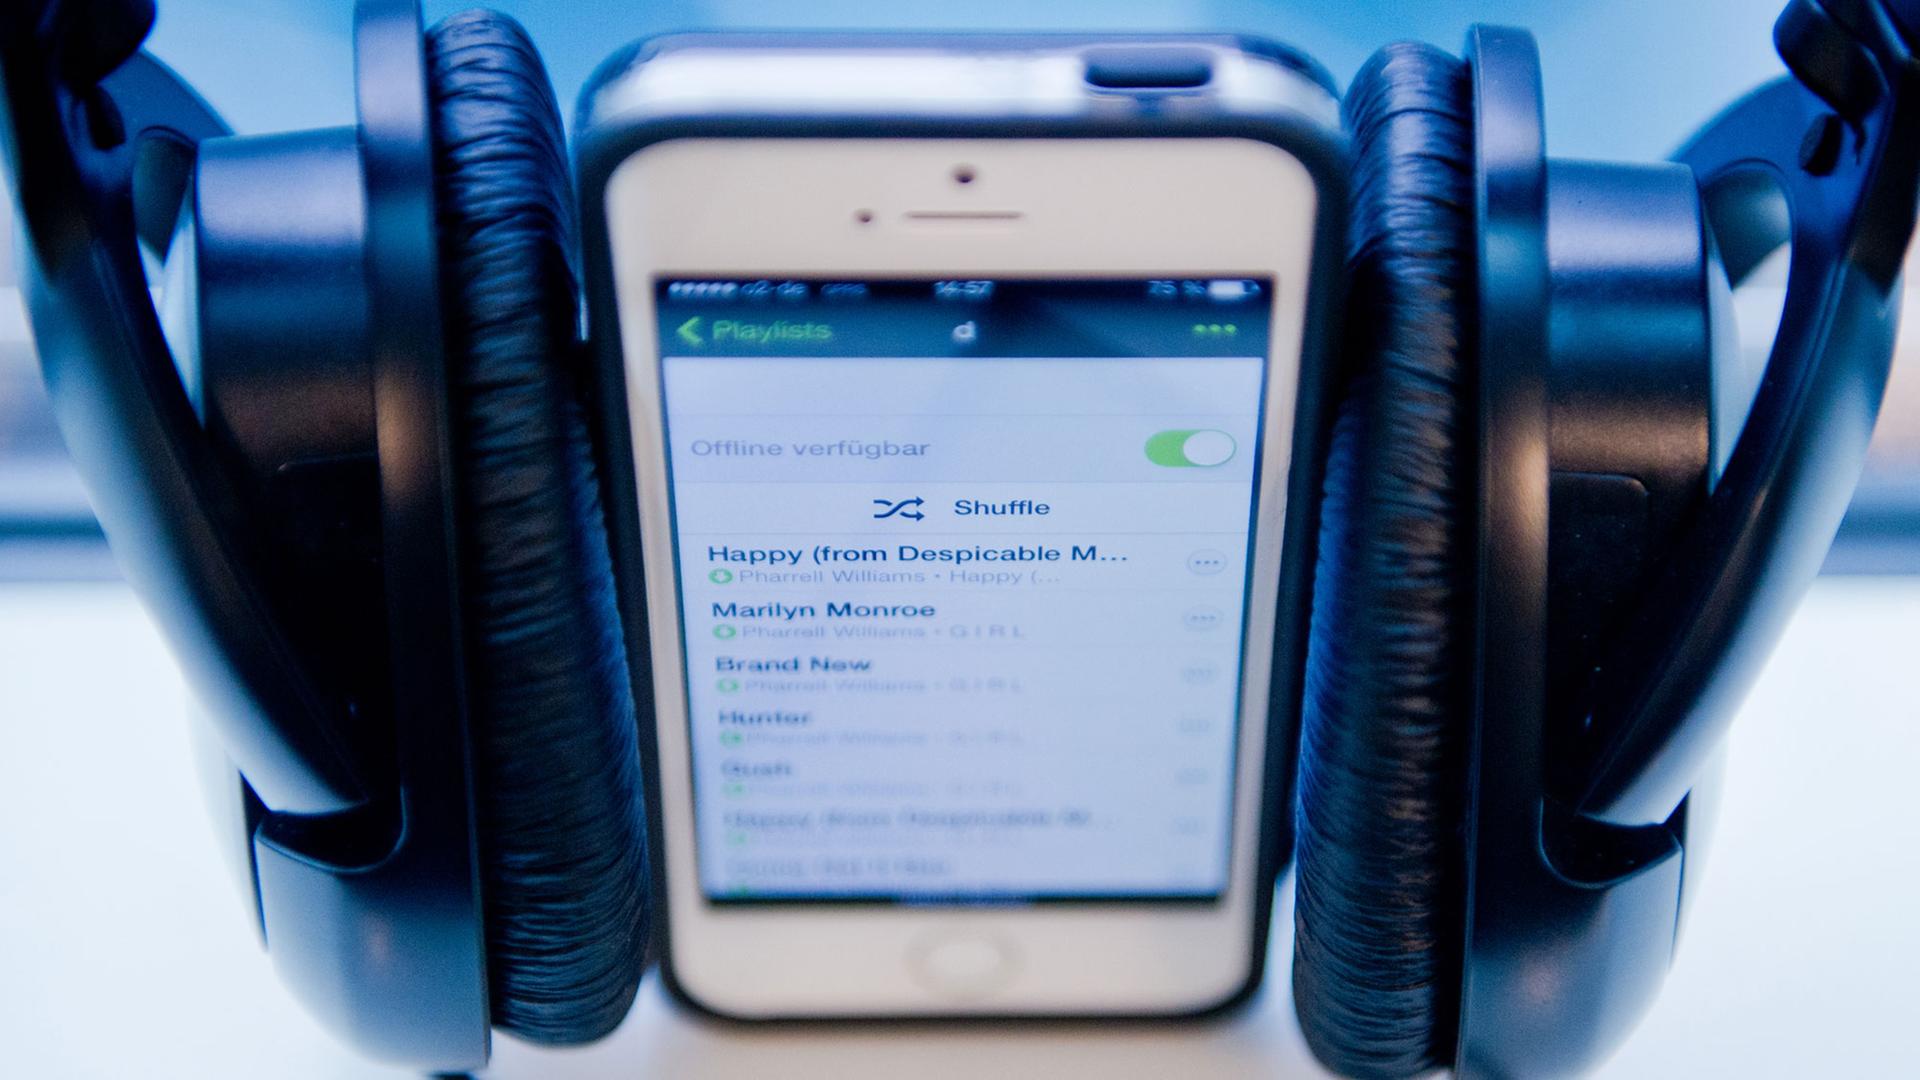 Ein Smartphone zeigt eine Musik-Playlist an.